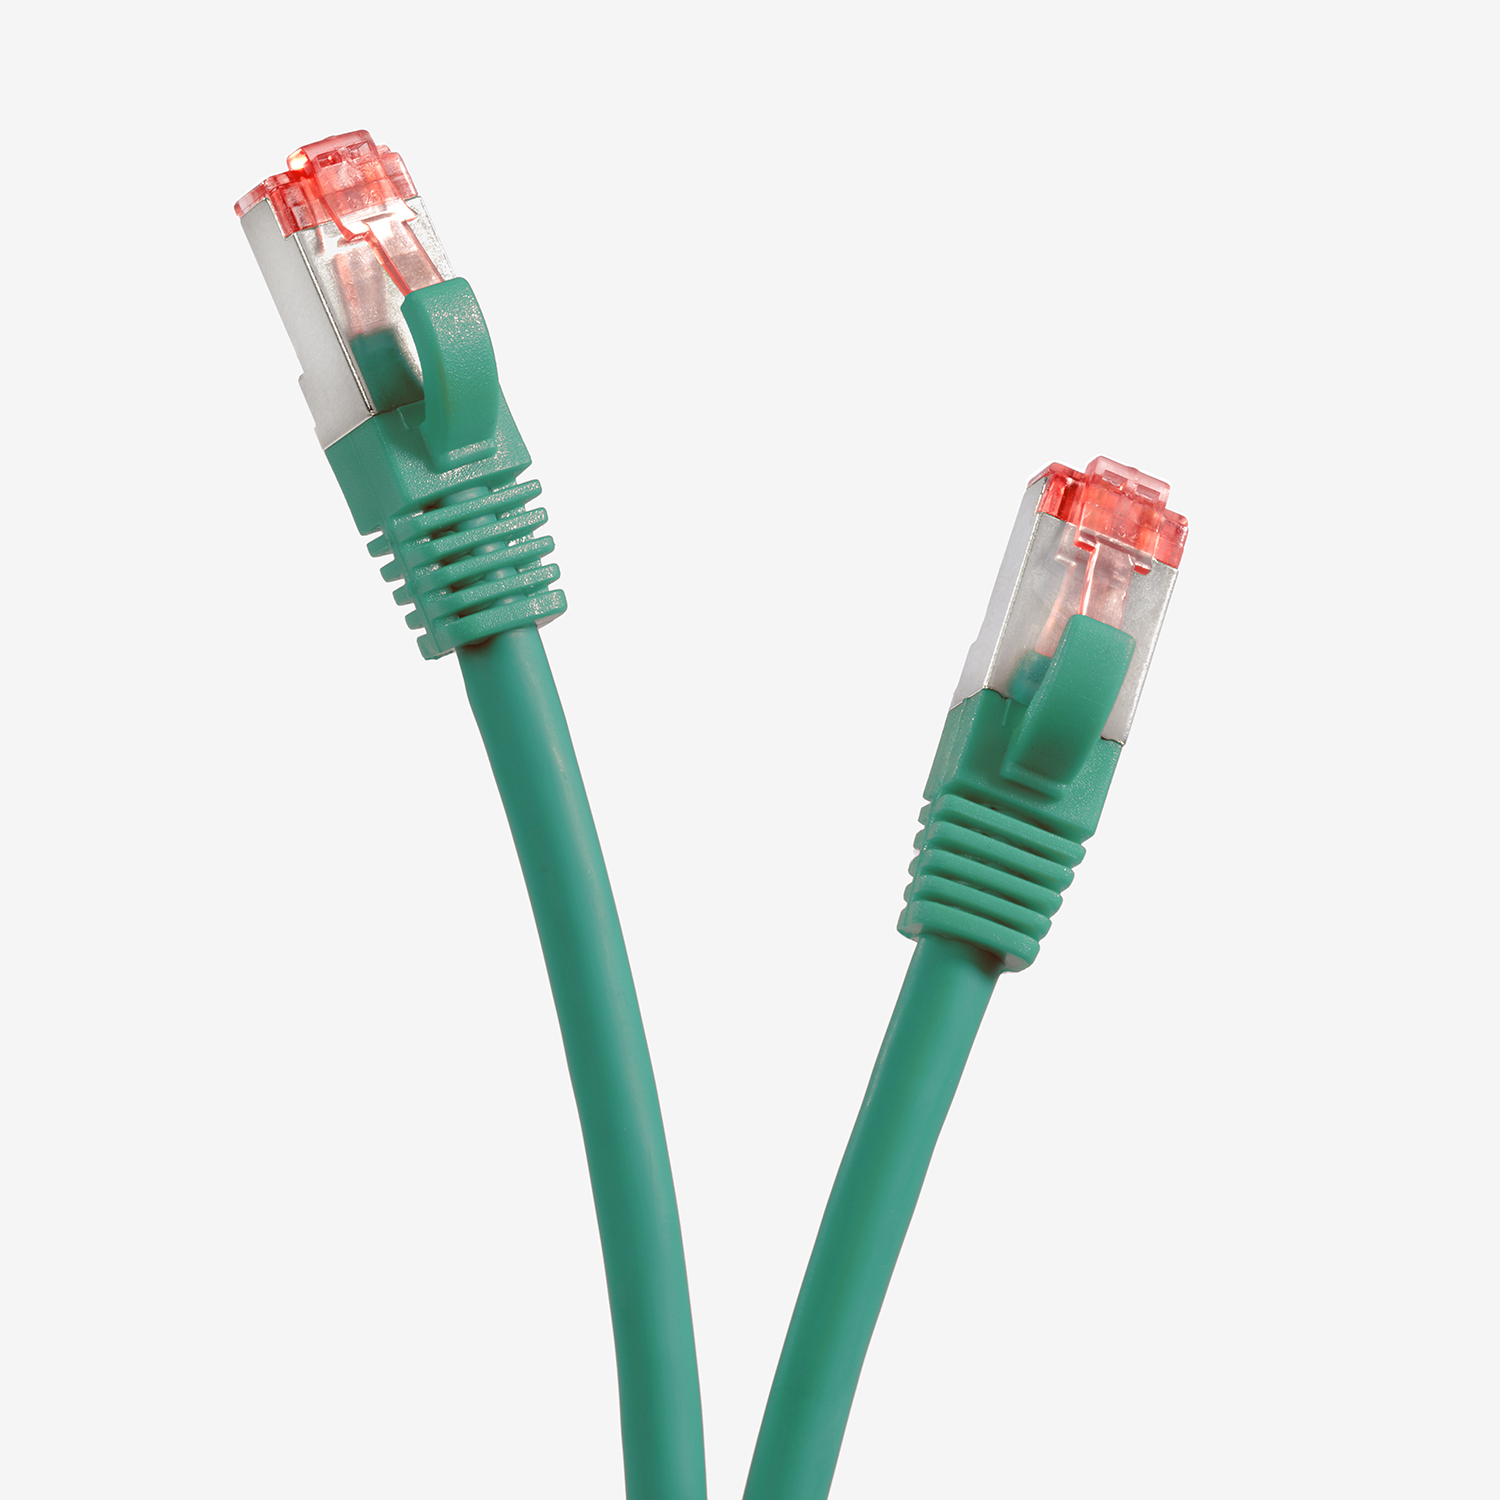 TPFNET 2m Patchkabel 2 S/FTP Netzwerkkabel grün, / m 1000Mbit, Netzwerkkabel